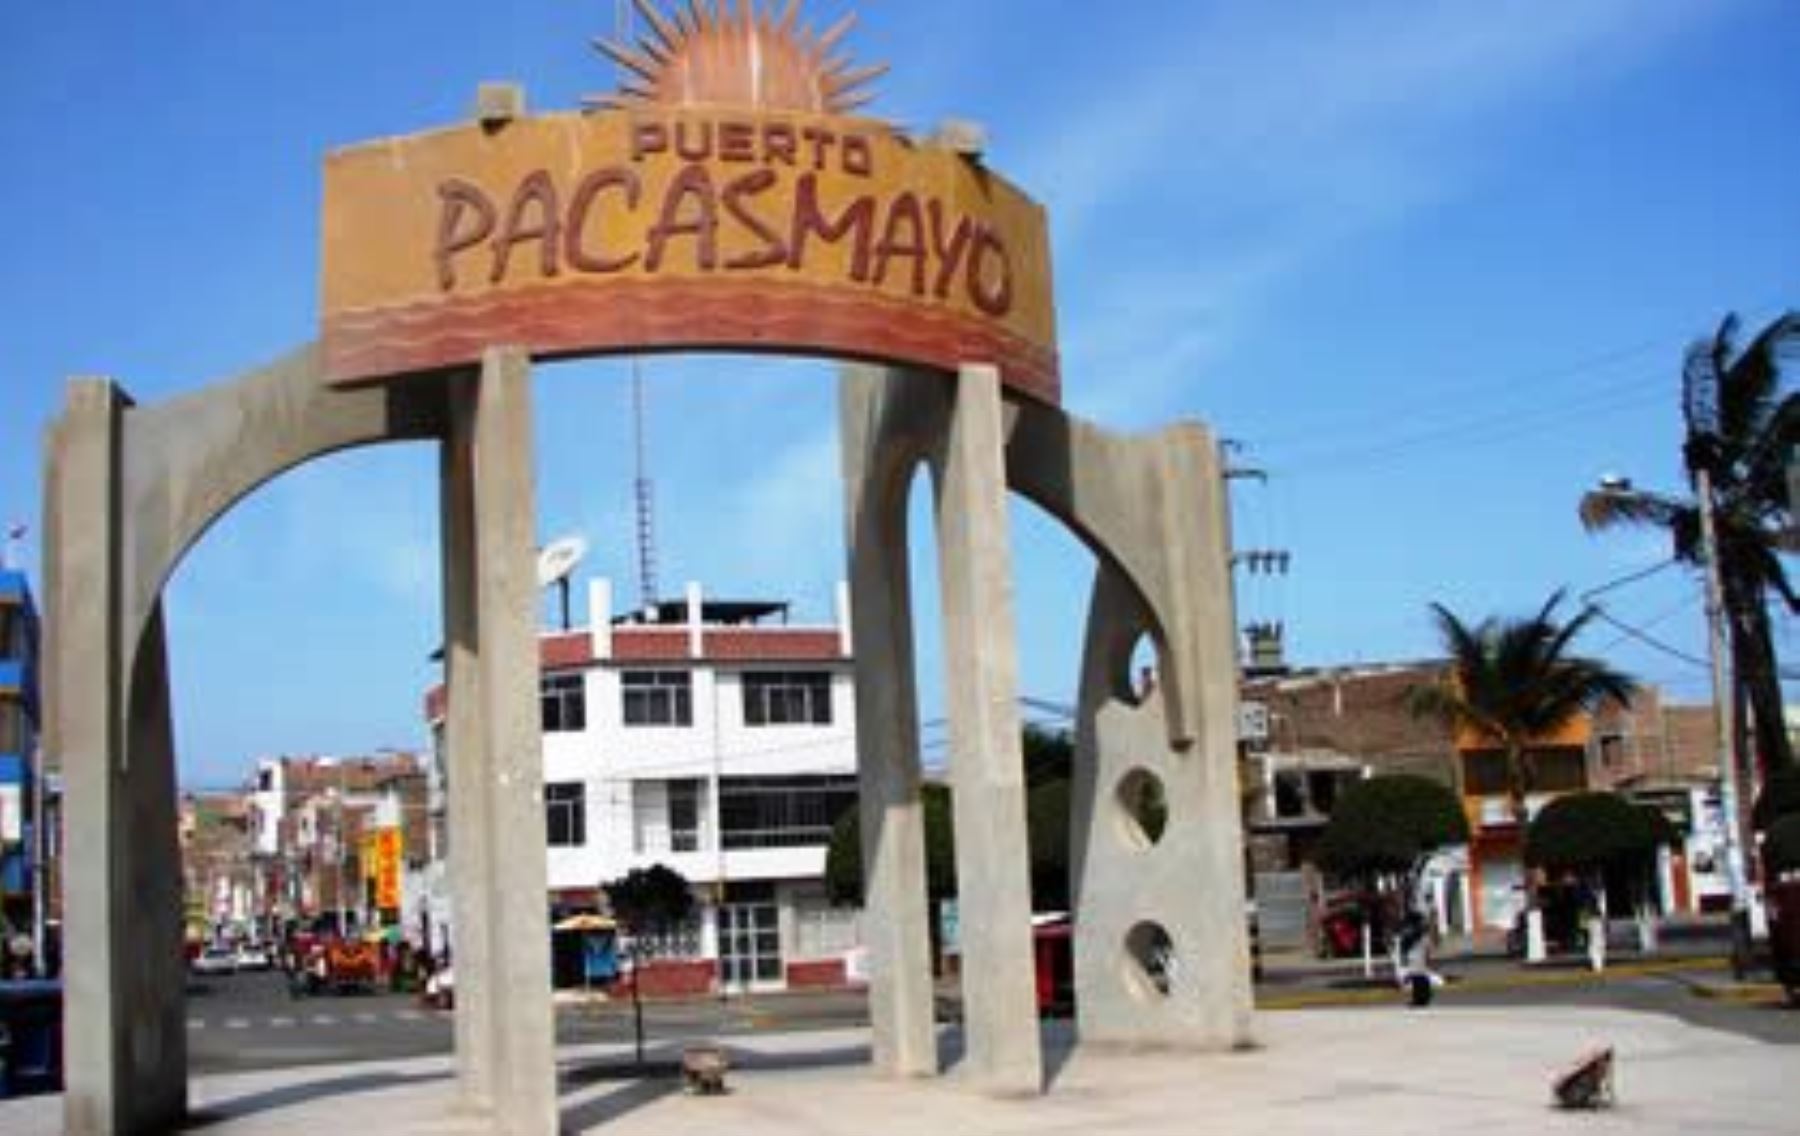 Mincetur ejecutó diversas obras de mejoramiento e interés turístico en Pacasmayo, La Libertad. ANDINA